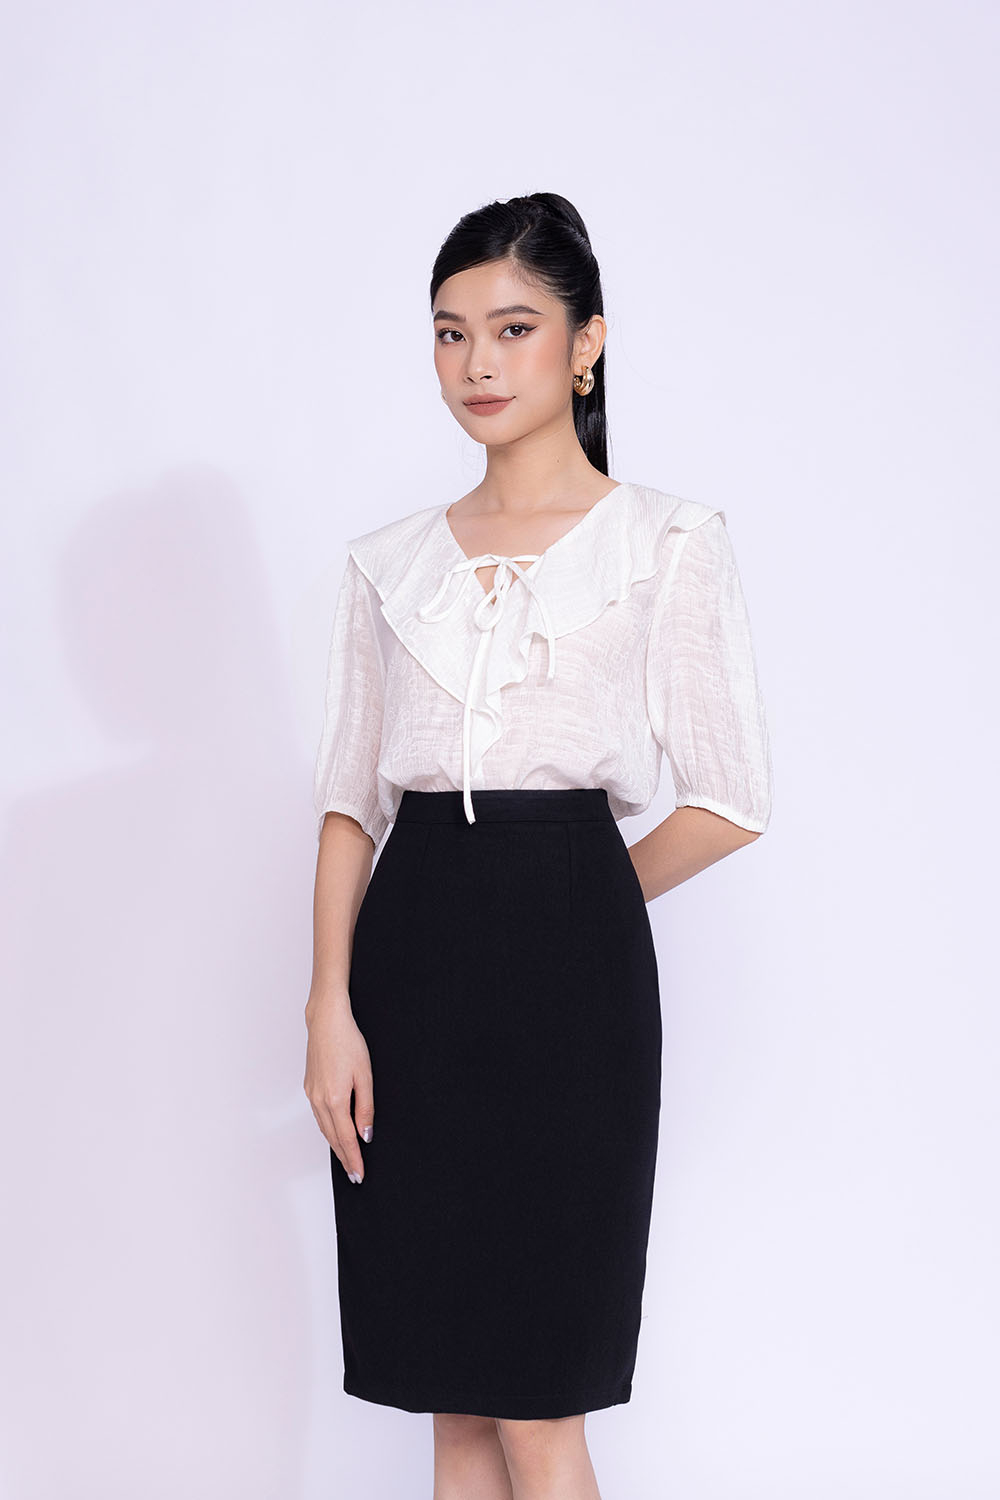 Gợi ý cách phối đồ với chân váy công sở màu đen cho các quý cô  Thời trang   Việt Giải Trí